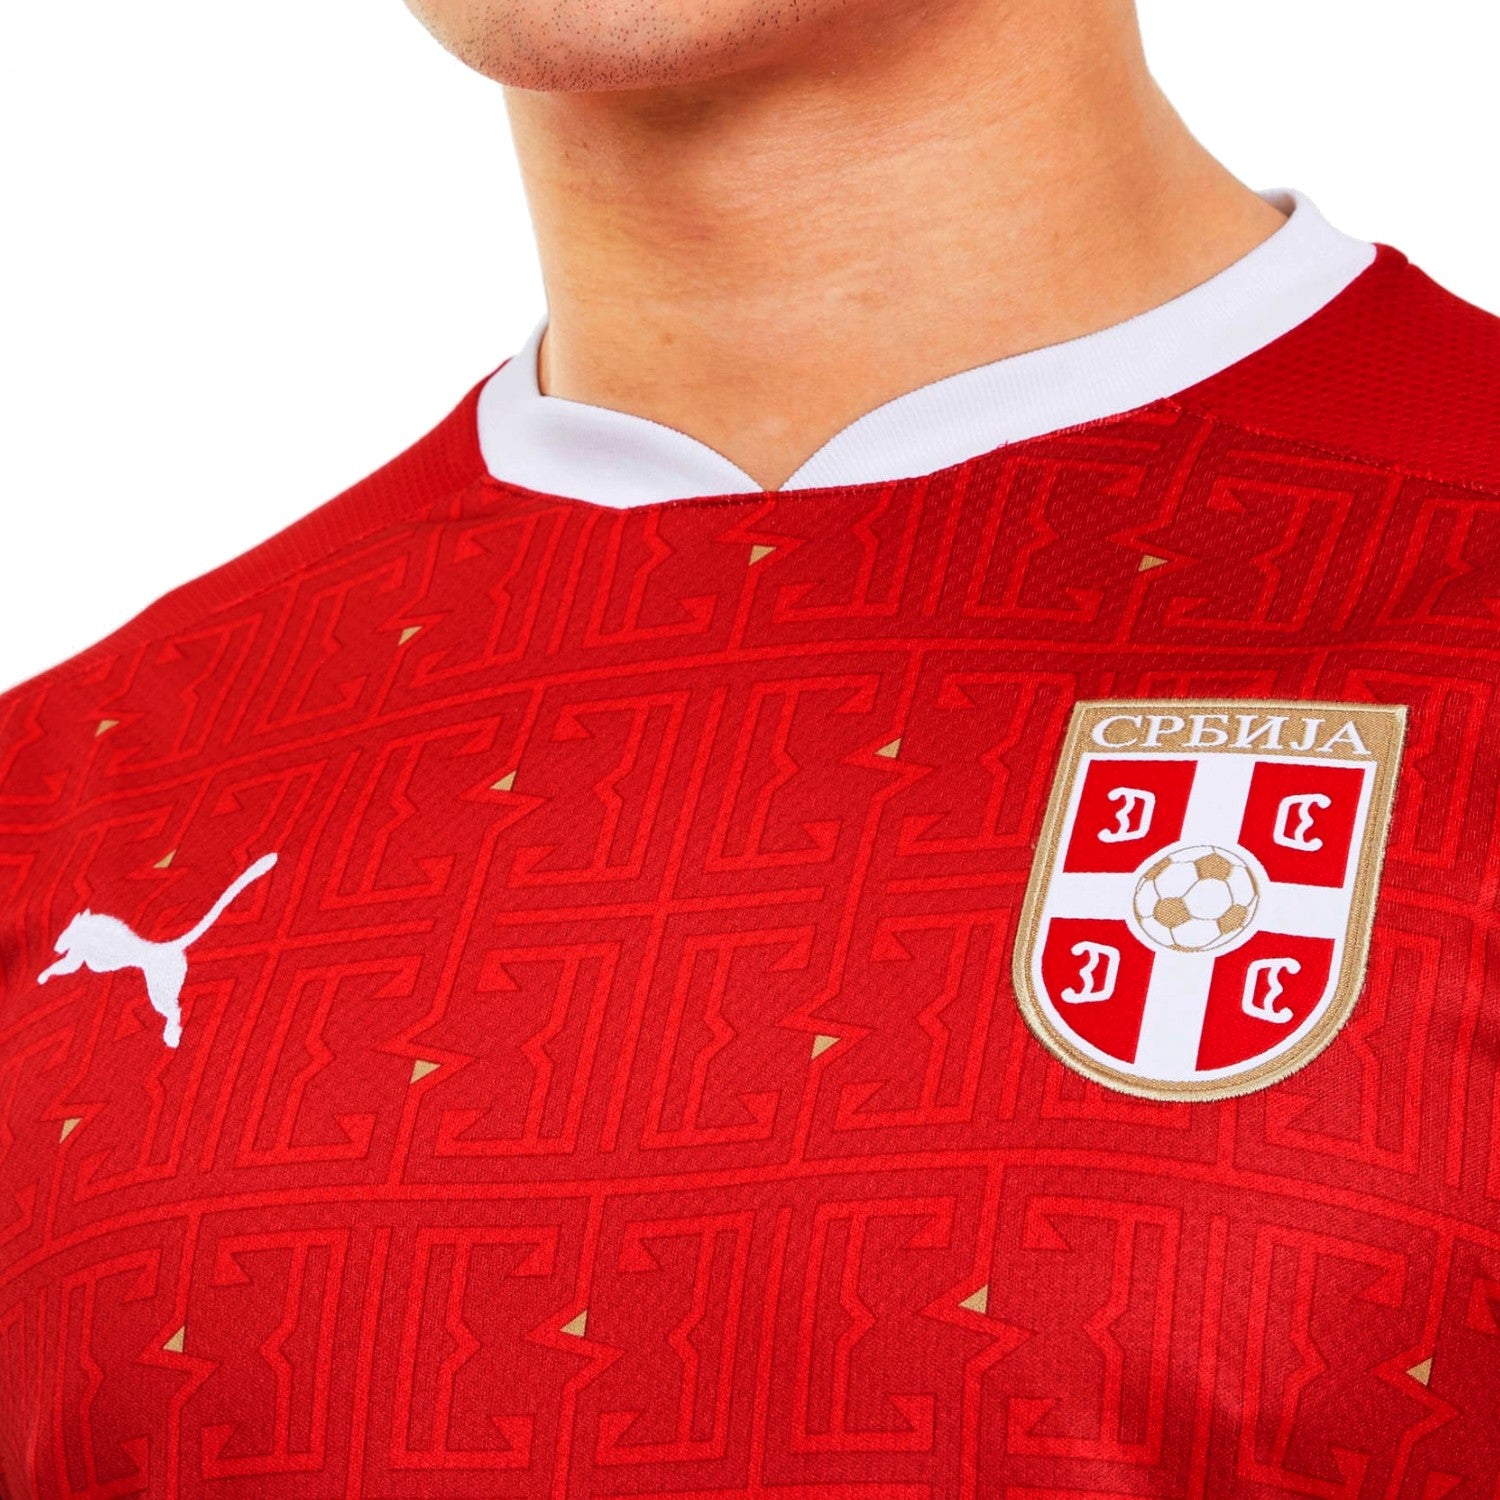 Serbia national team Home jersey 2020/21 - Puma – SoccerTracksuits.com